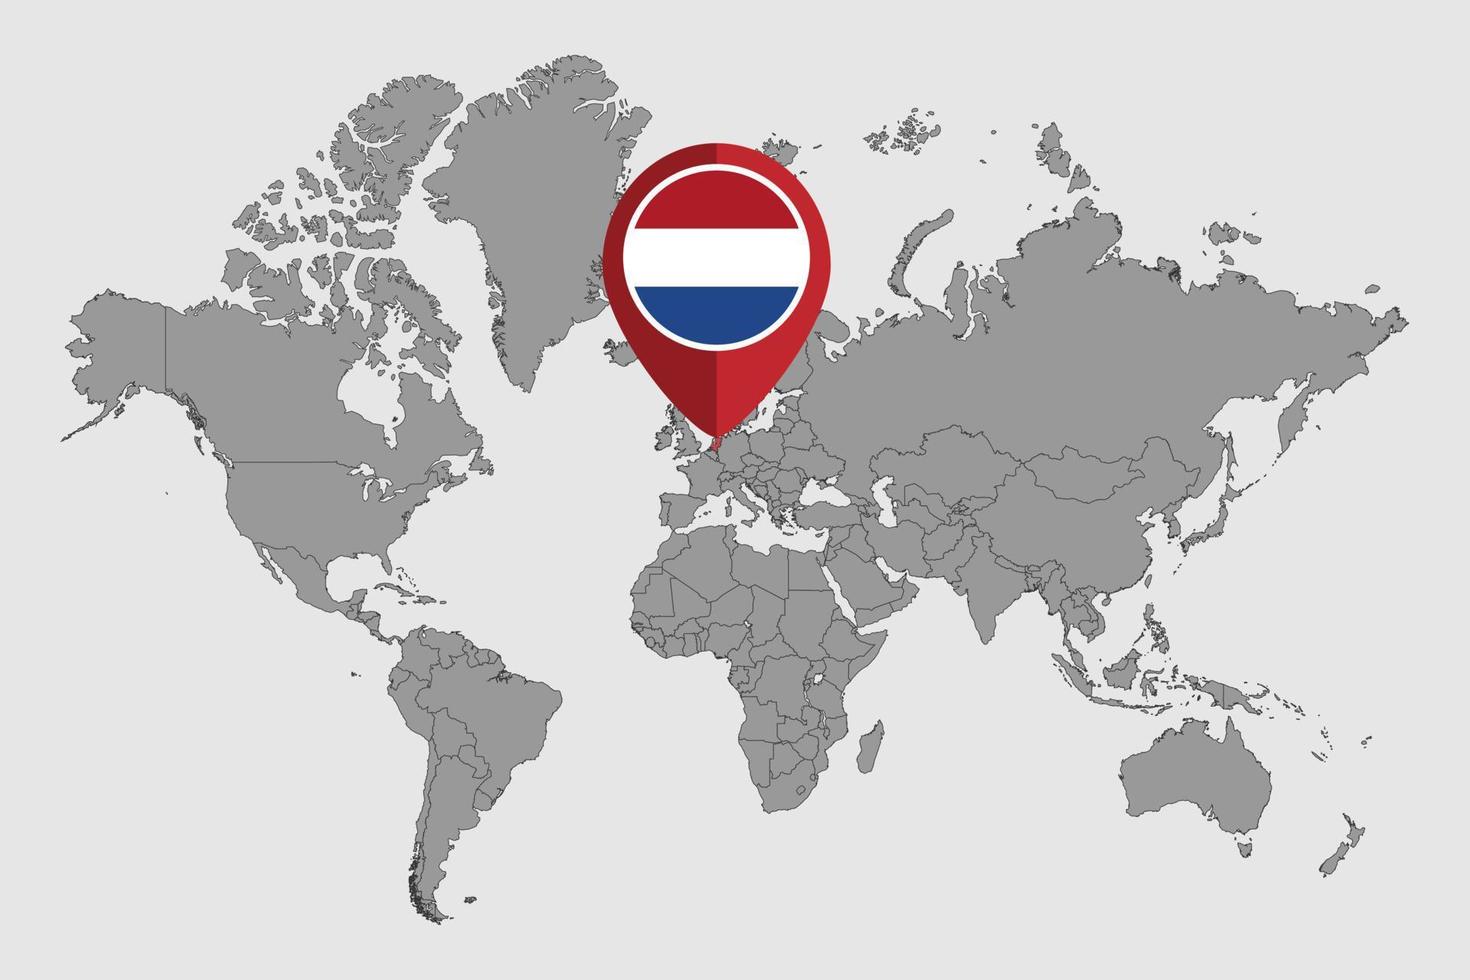 pin mapa con bandera de países bajos en el mapa mundial. ilustración vectorial vector